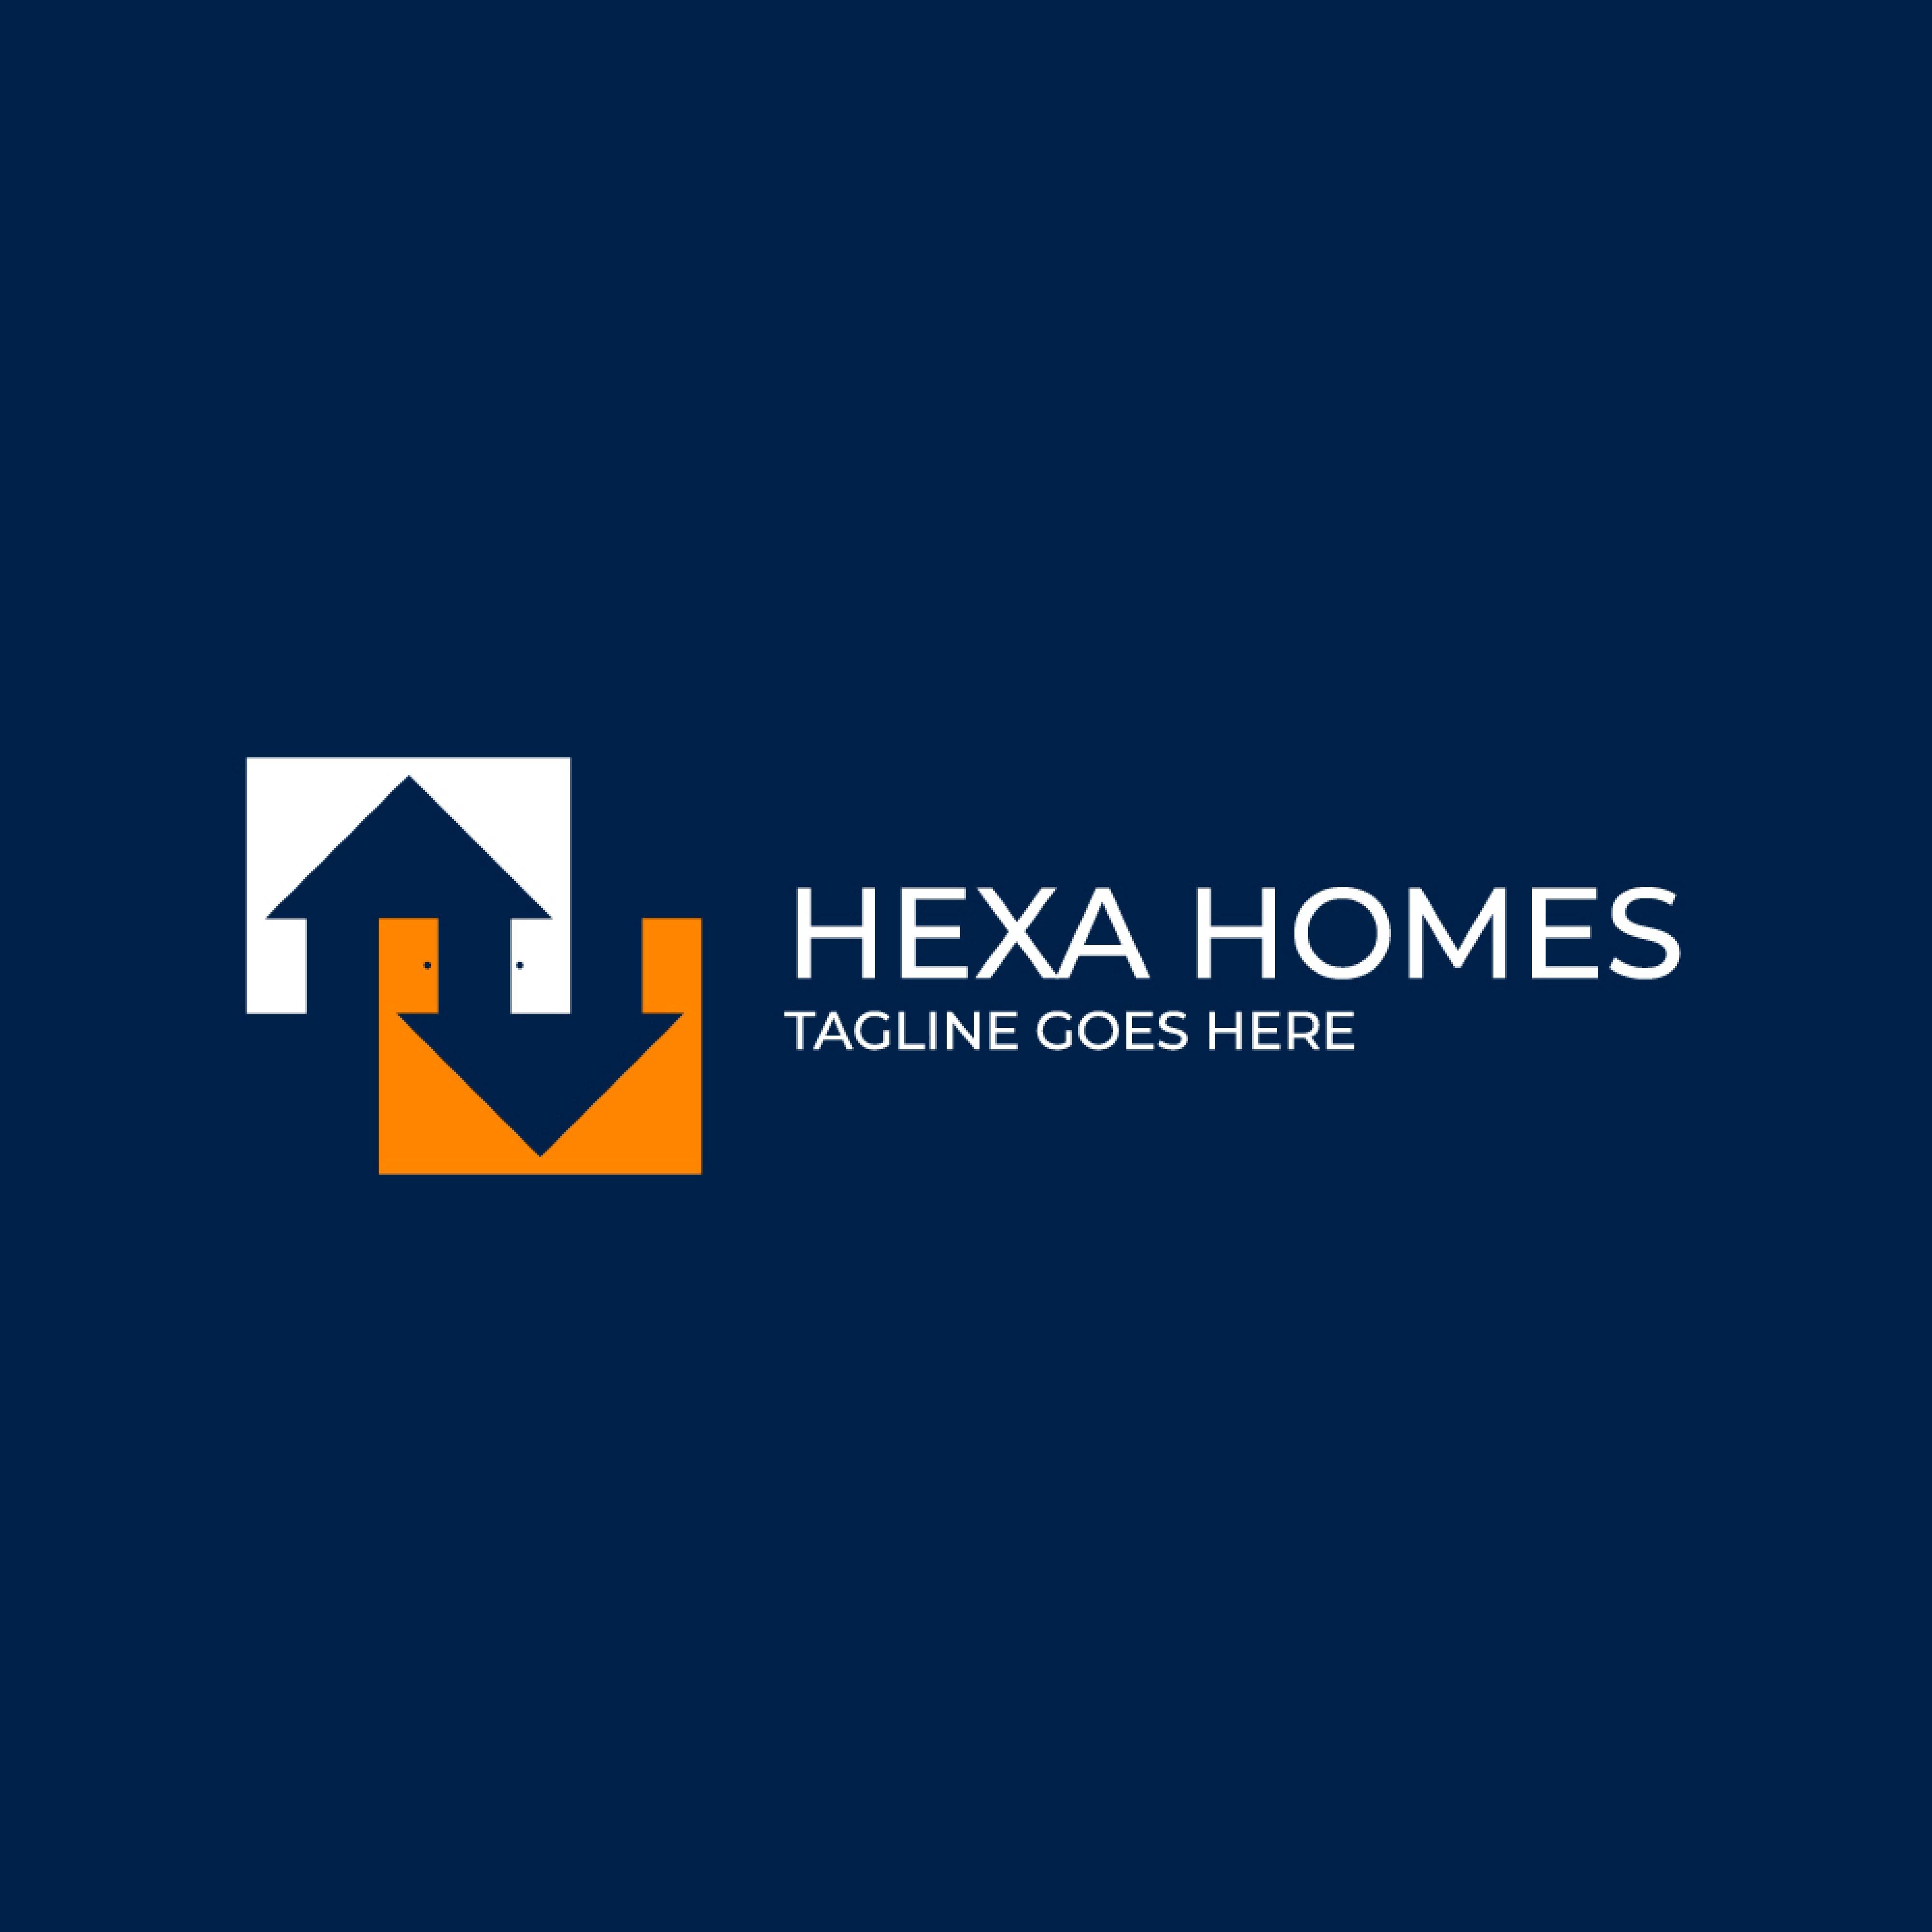 Hexa home real estate logo design template with house vector